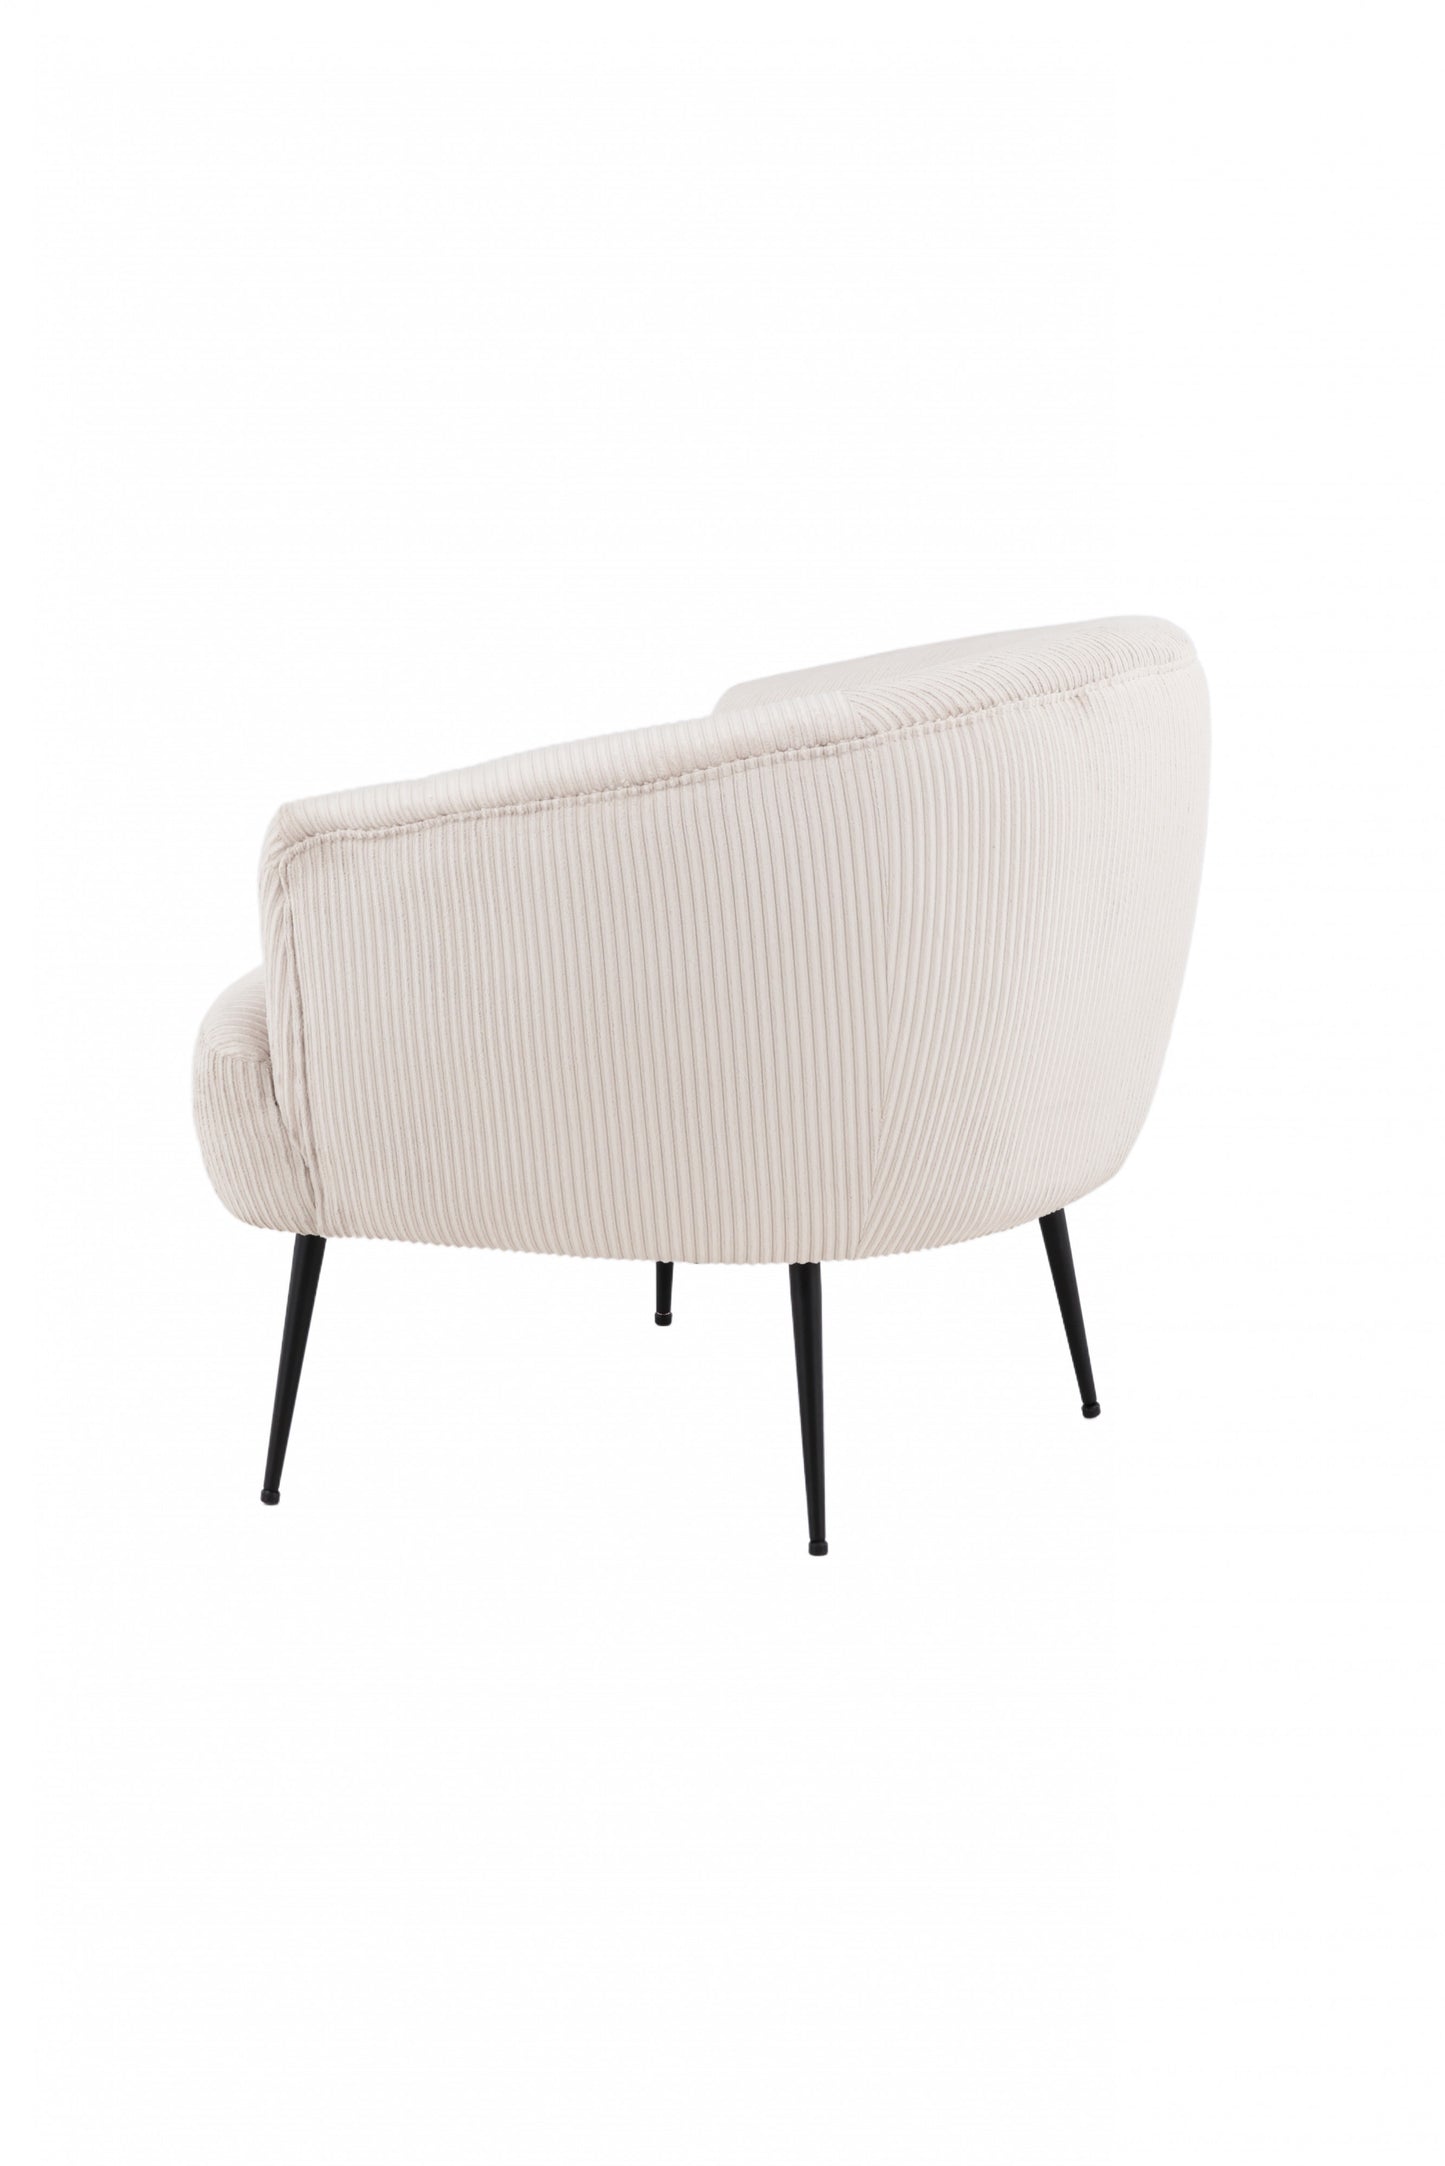 Venture Design | Derry Lounge Chair - Svart / Beige Manchester